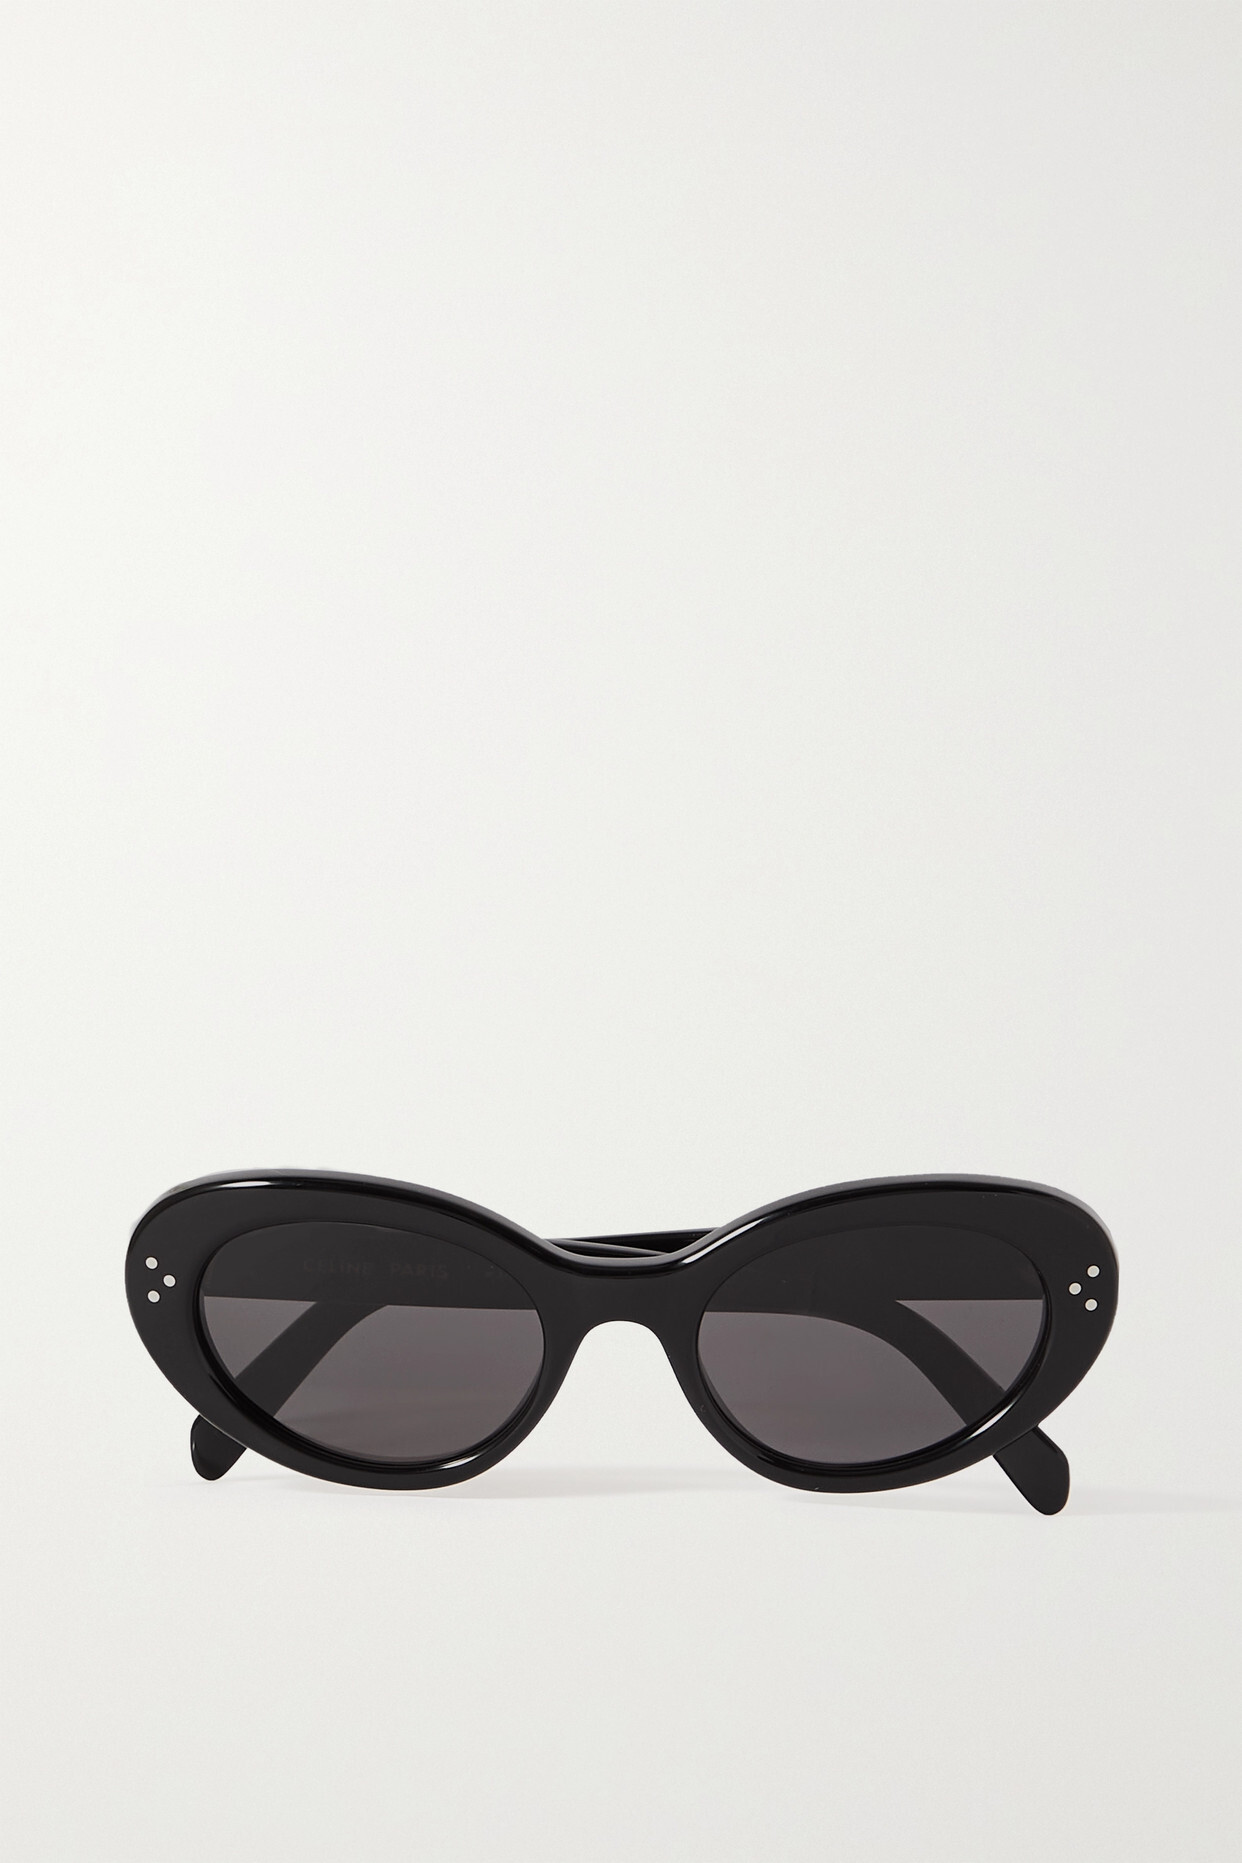 CELINE Eyewear - Oval-frame Acetate Sunglasses - Black